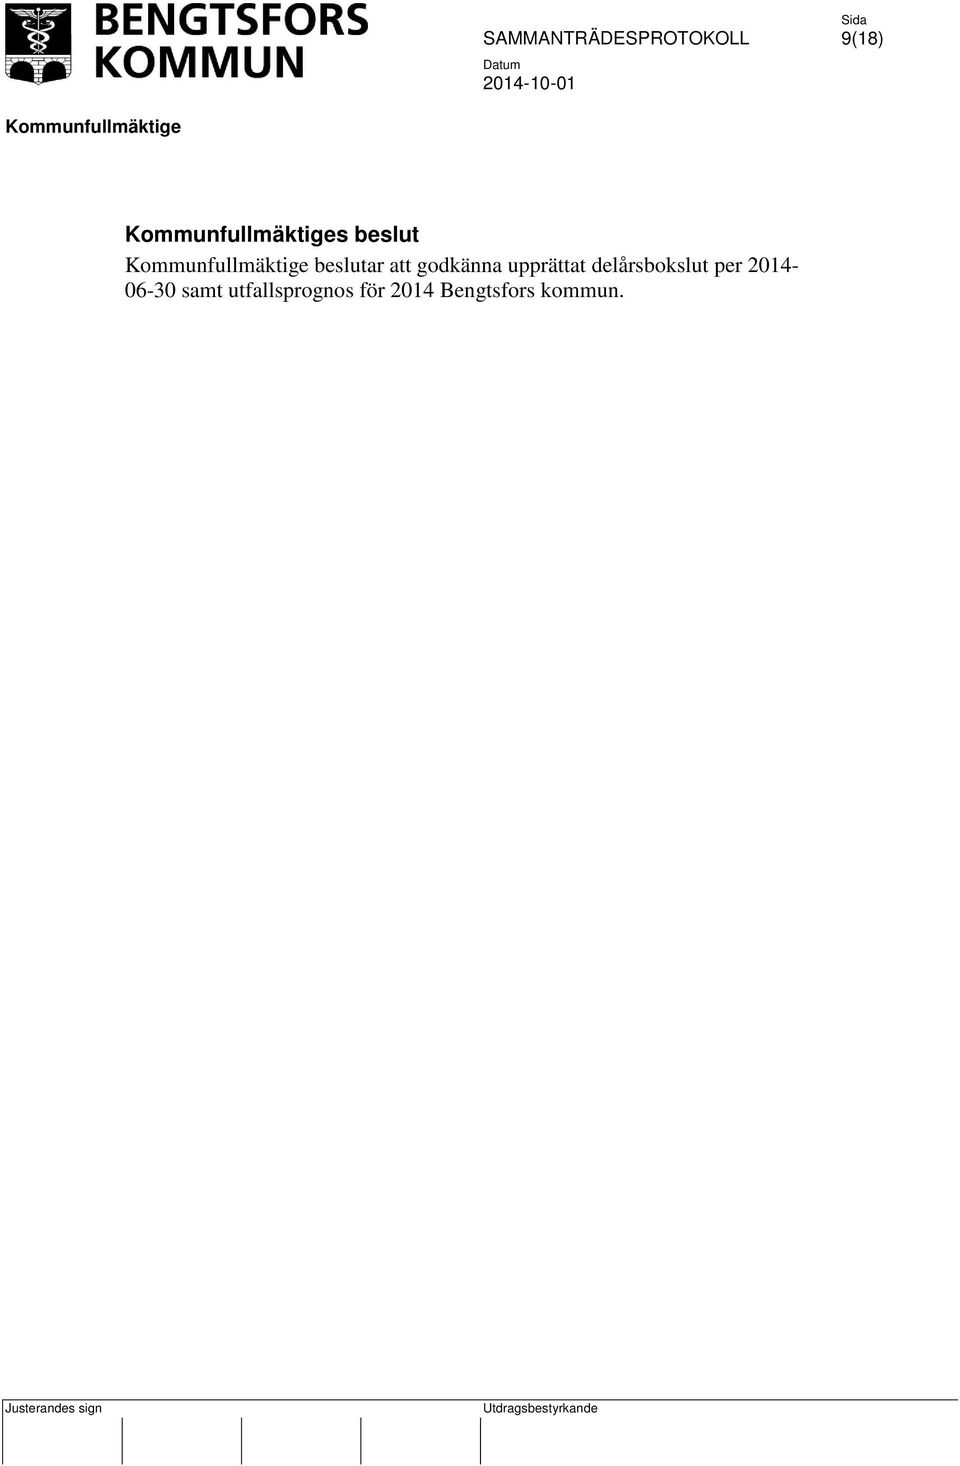 delårsbokslut per 2014-06-30